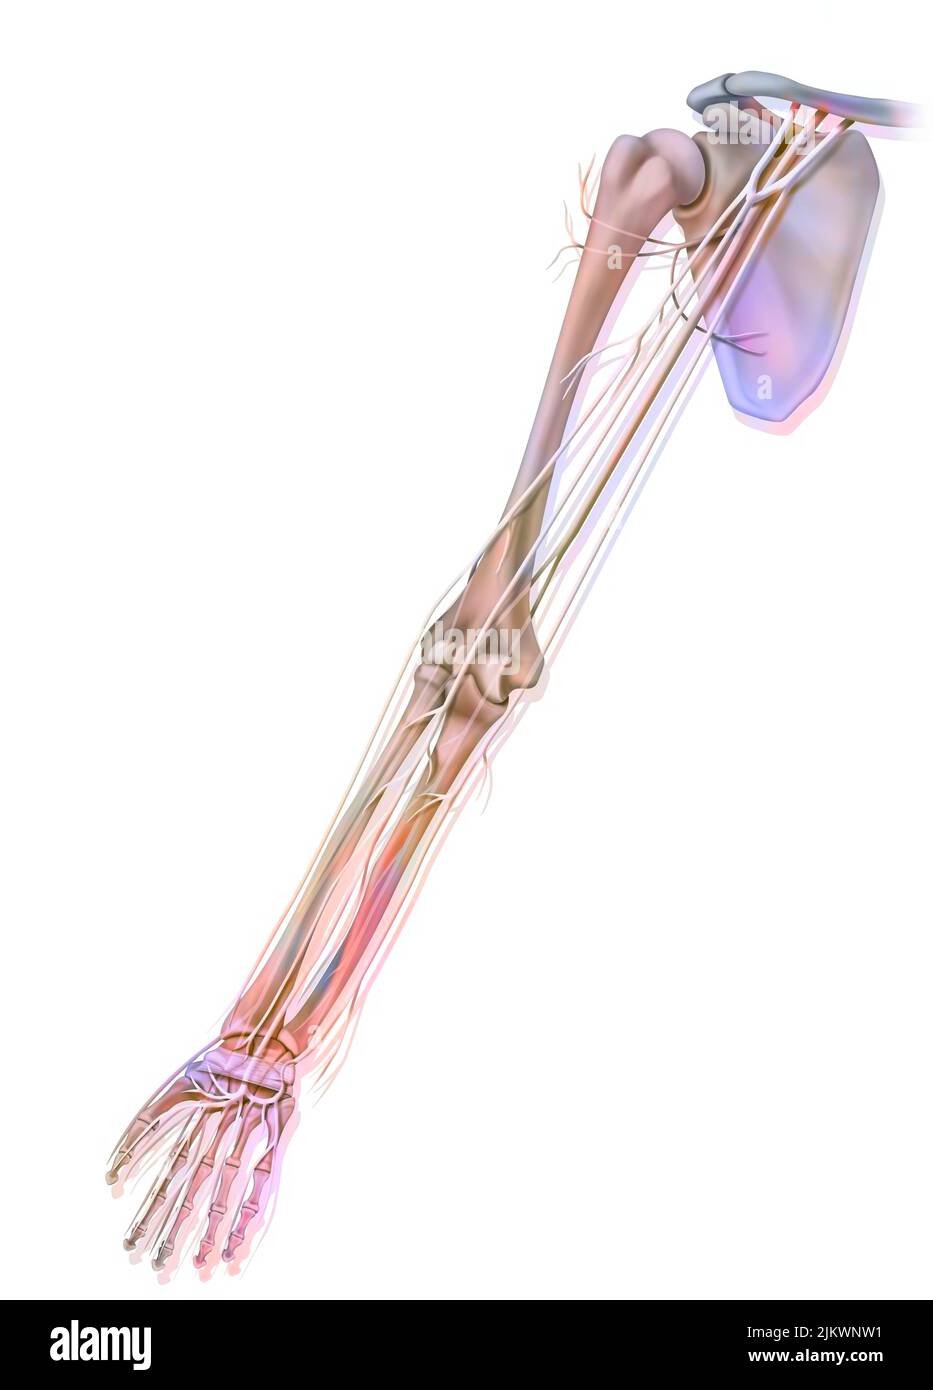 Anatomia dei nervi dell'arto superiore (braccio) in vista palmar. Foto Stock